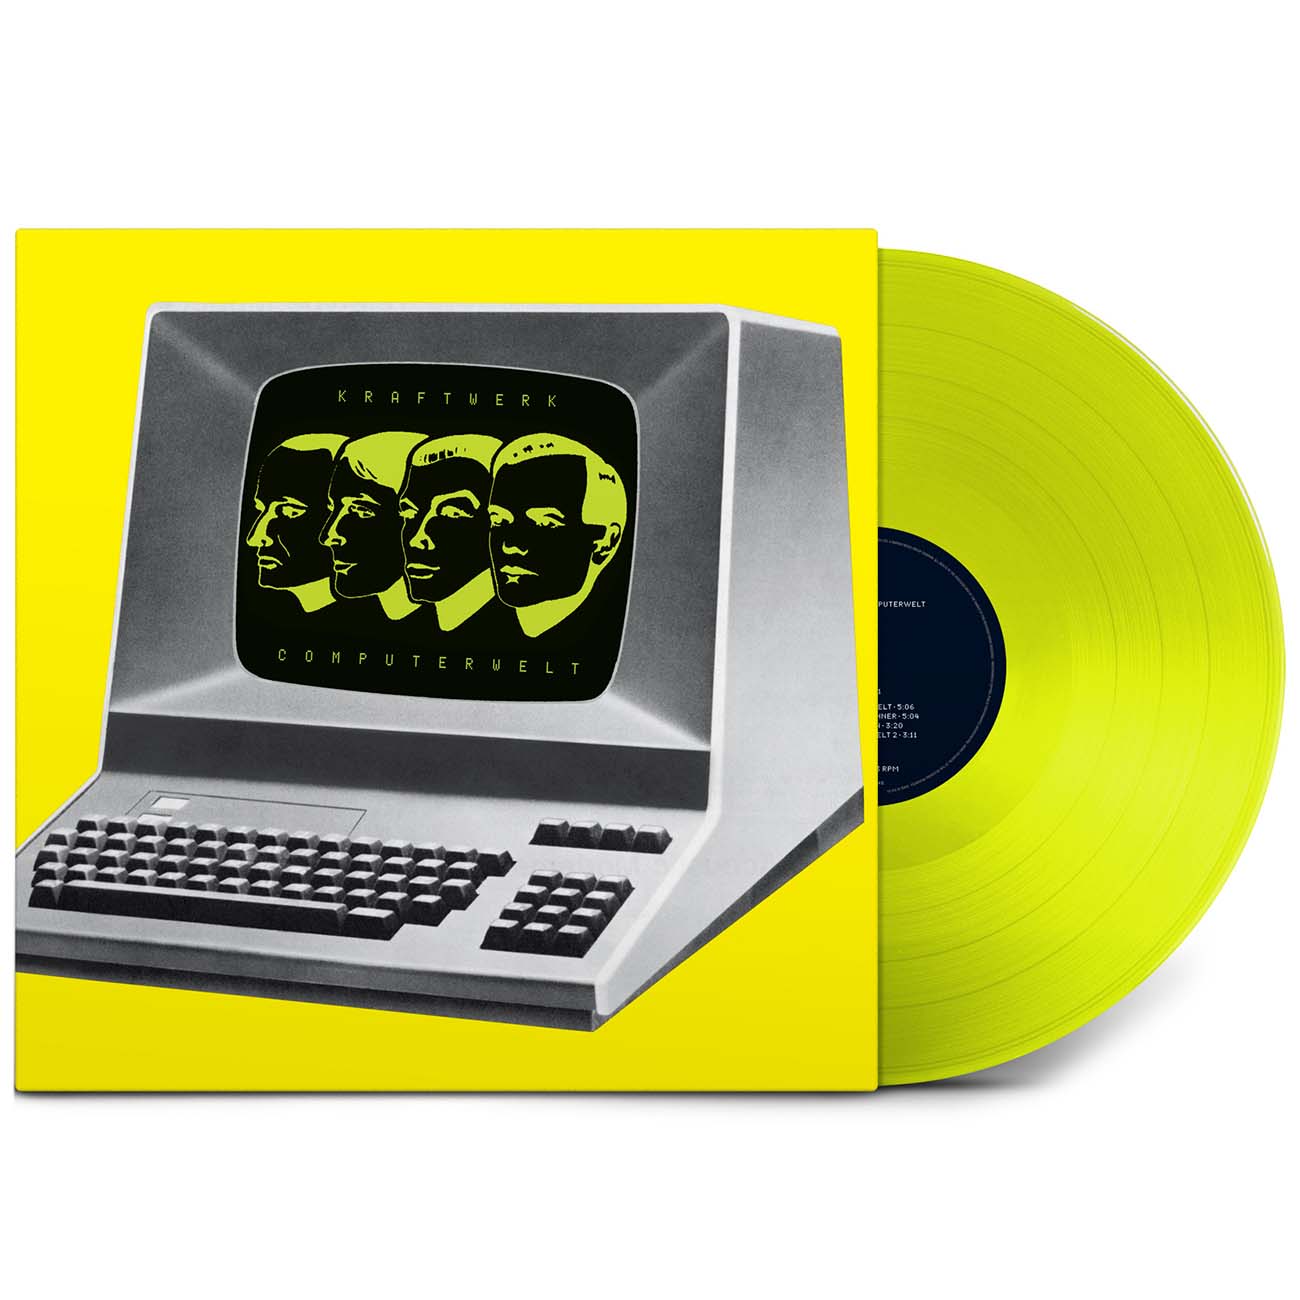 Kraftwerk / Computer World (Remastered)